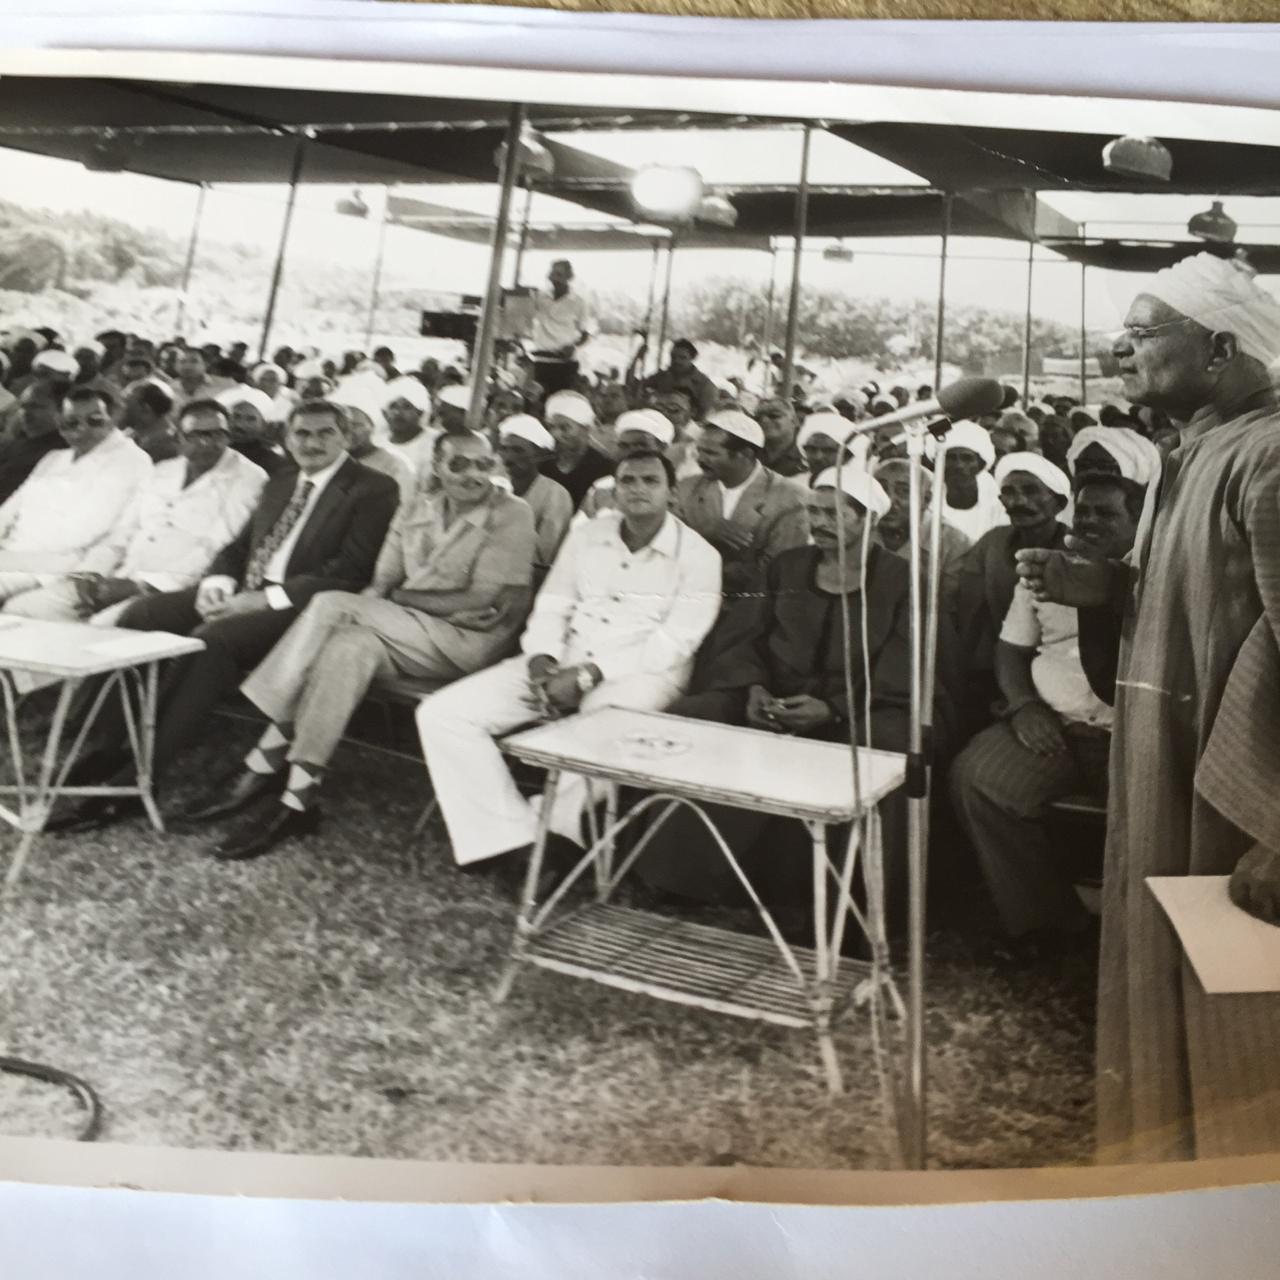 عيد الصيادين بجوار إستراحة الرئيس في المعمورة في صيف سنة 1980 بحضور الرئيس السادات